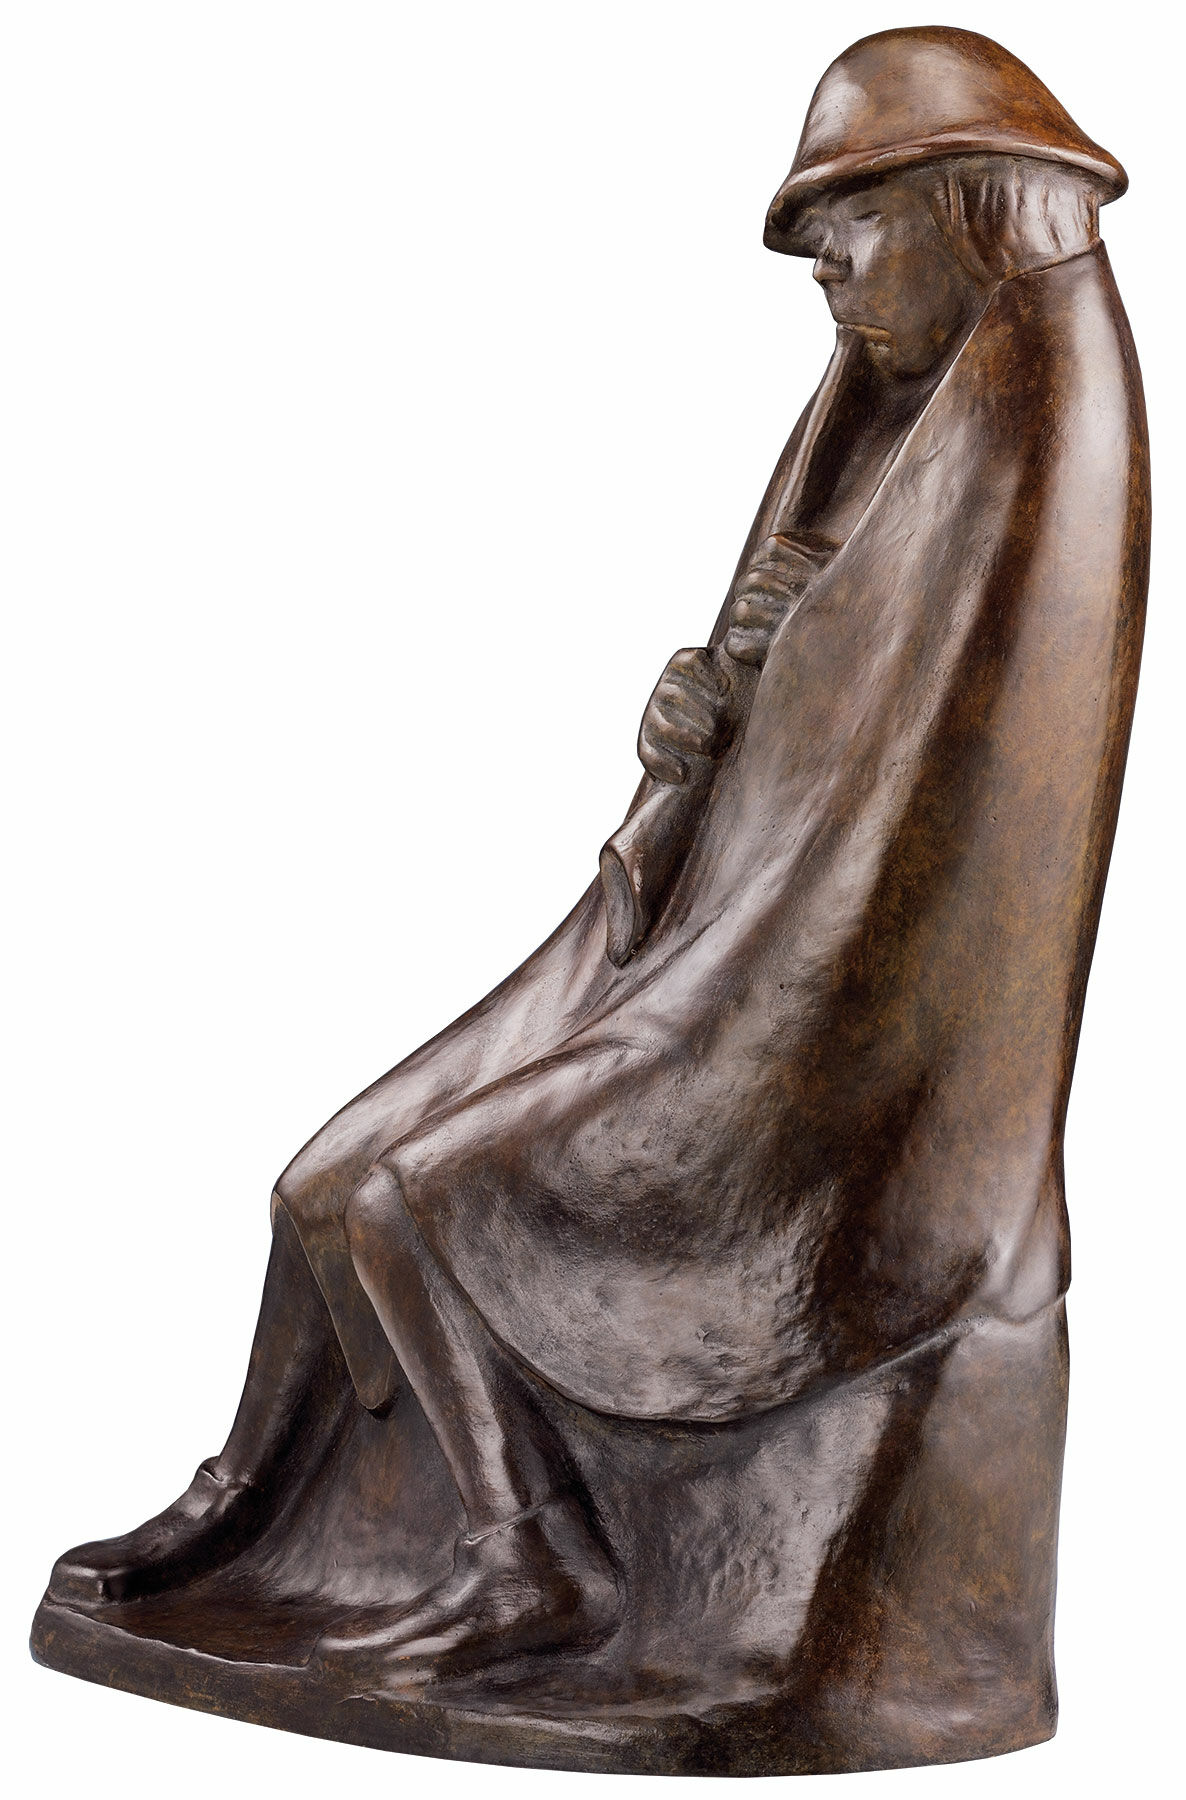 Sculptuur "De Fluitspeler" (1936), bronzen reductie von Ernst Barlach